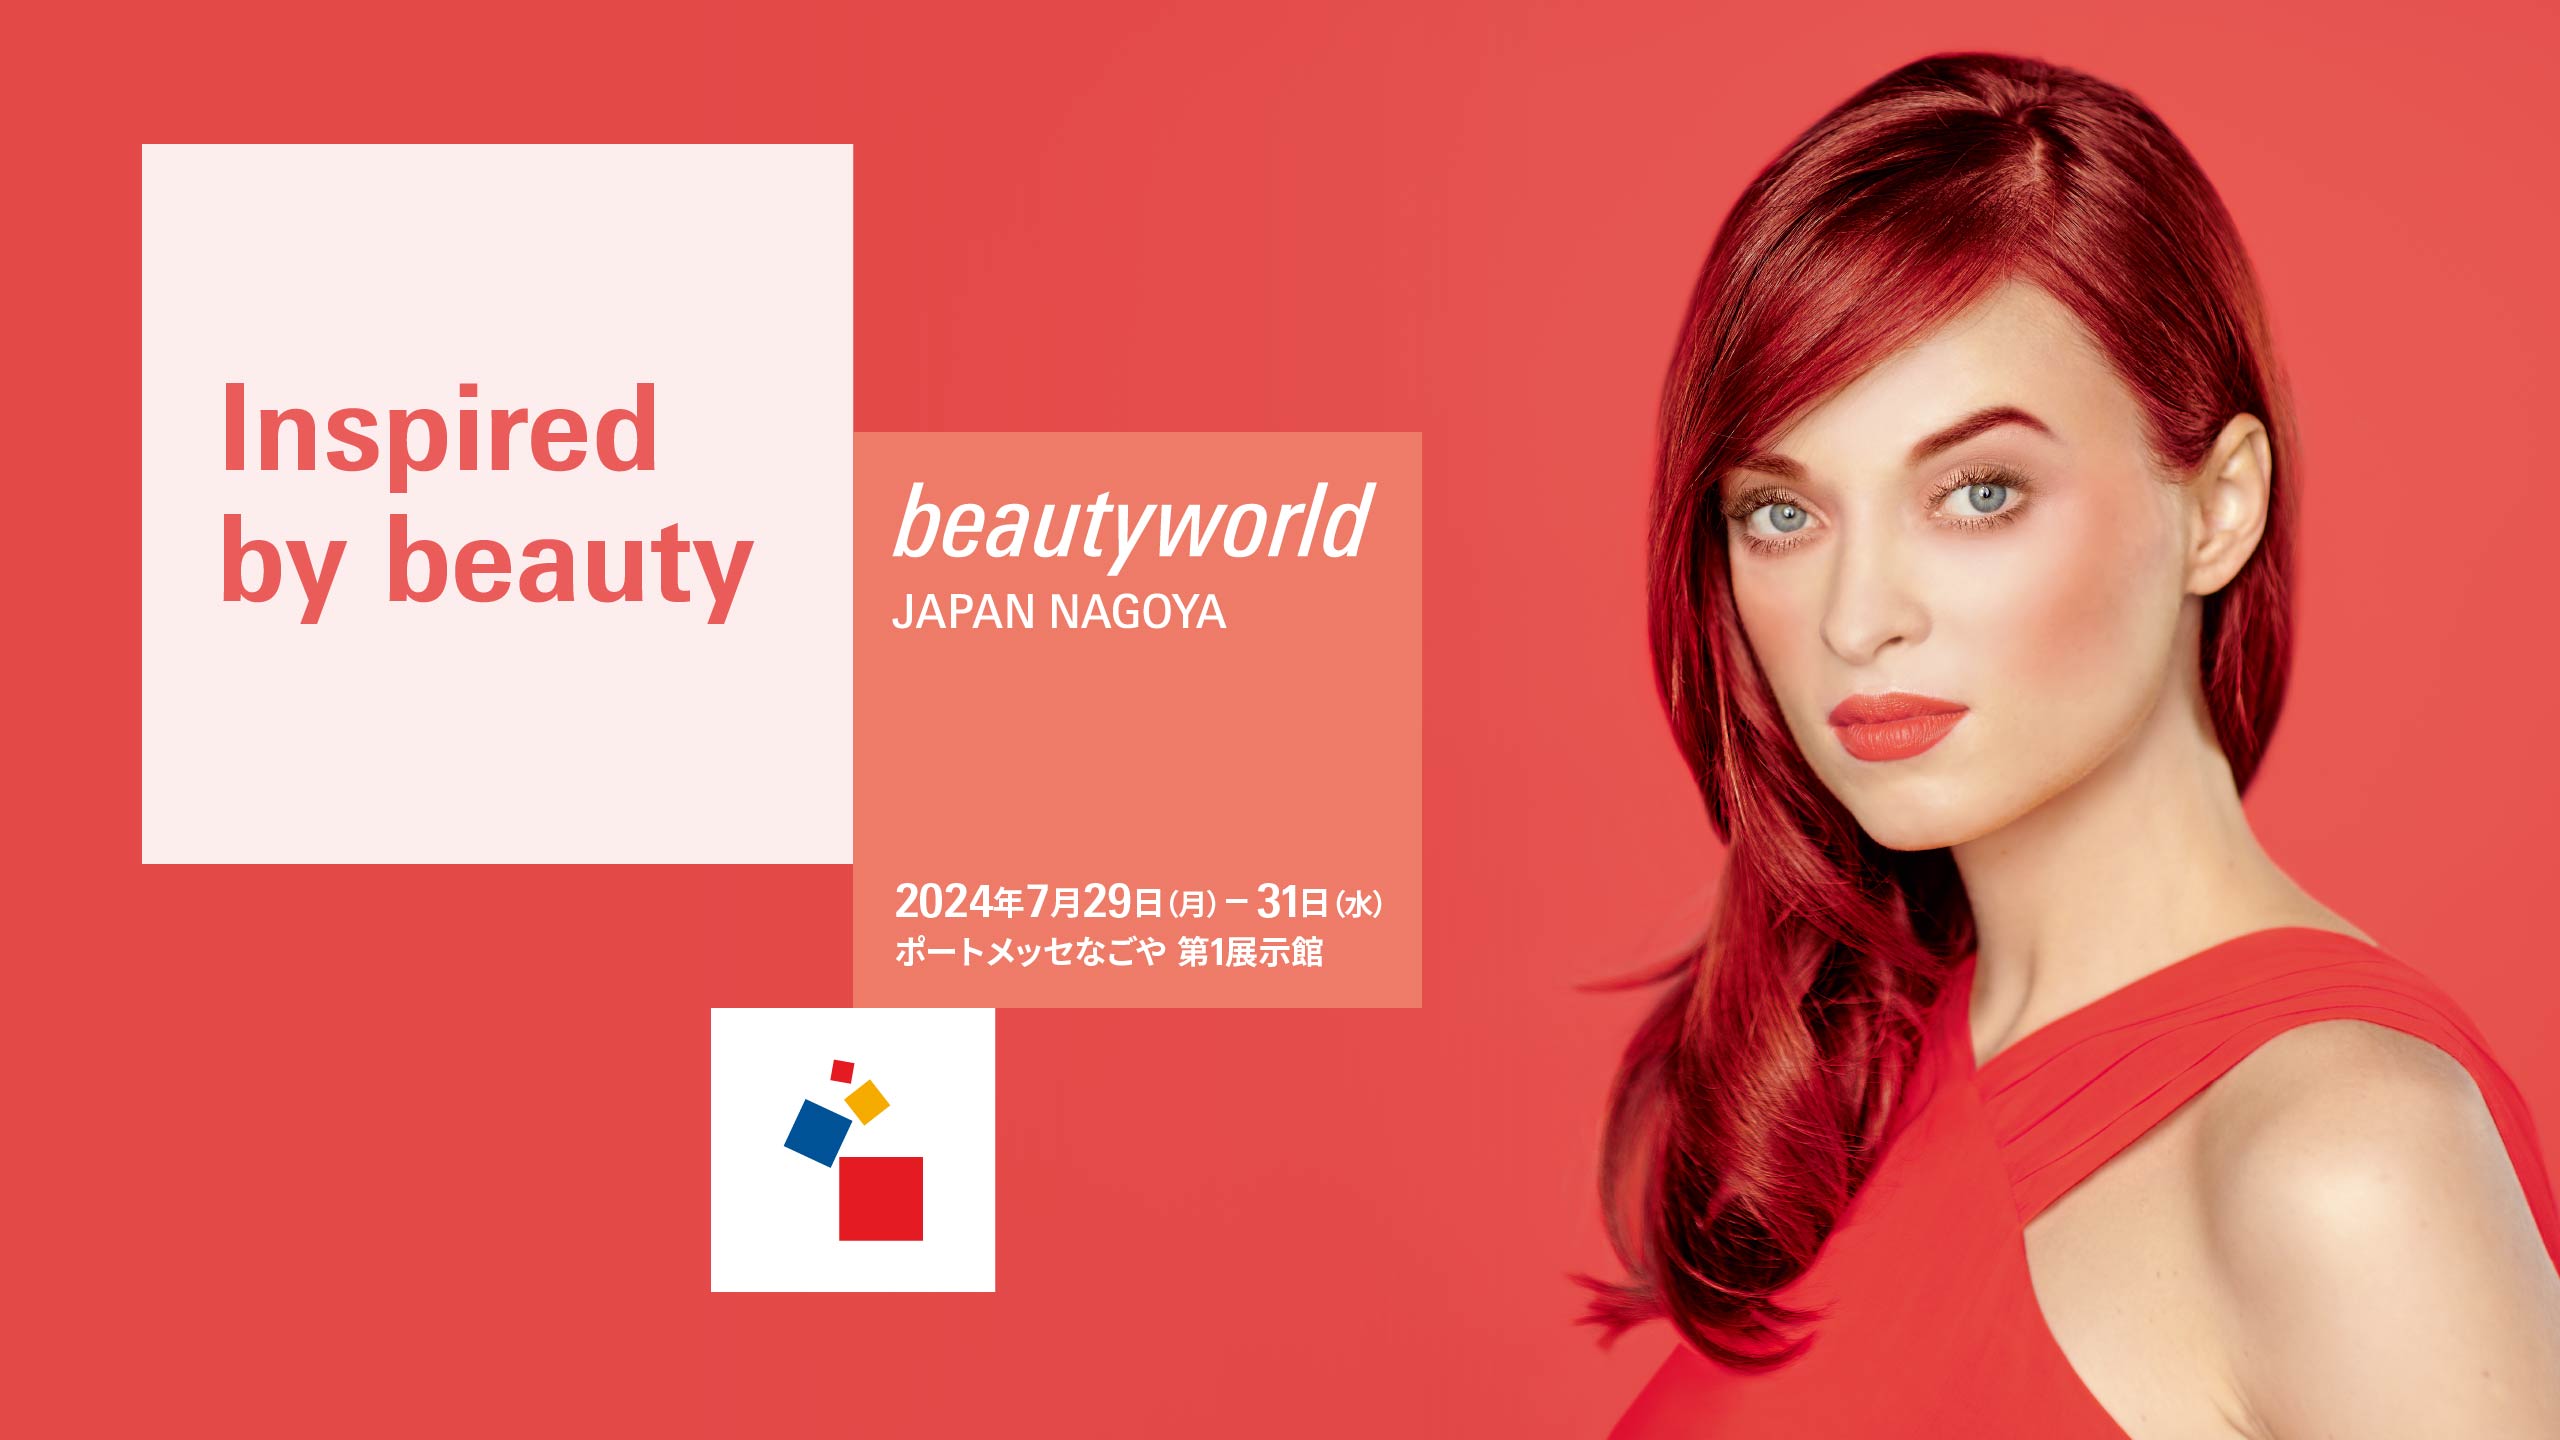 Beautyworld Japan Nagoya